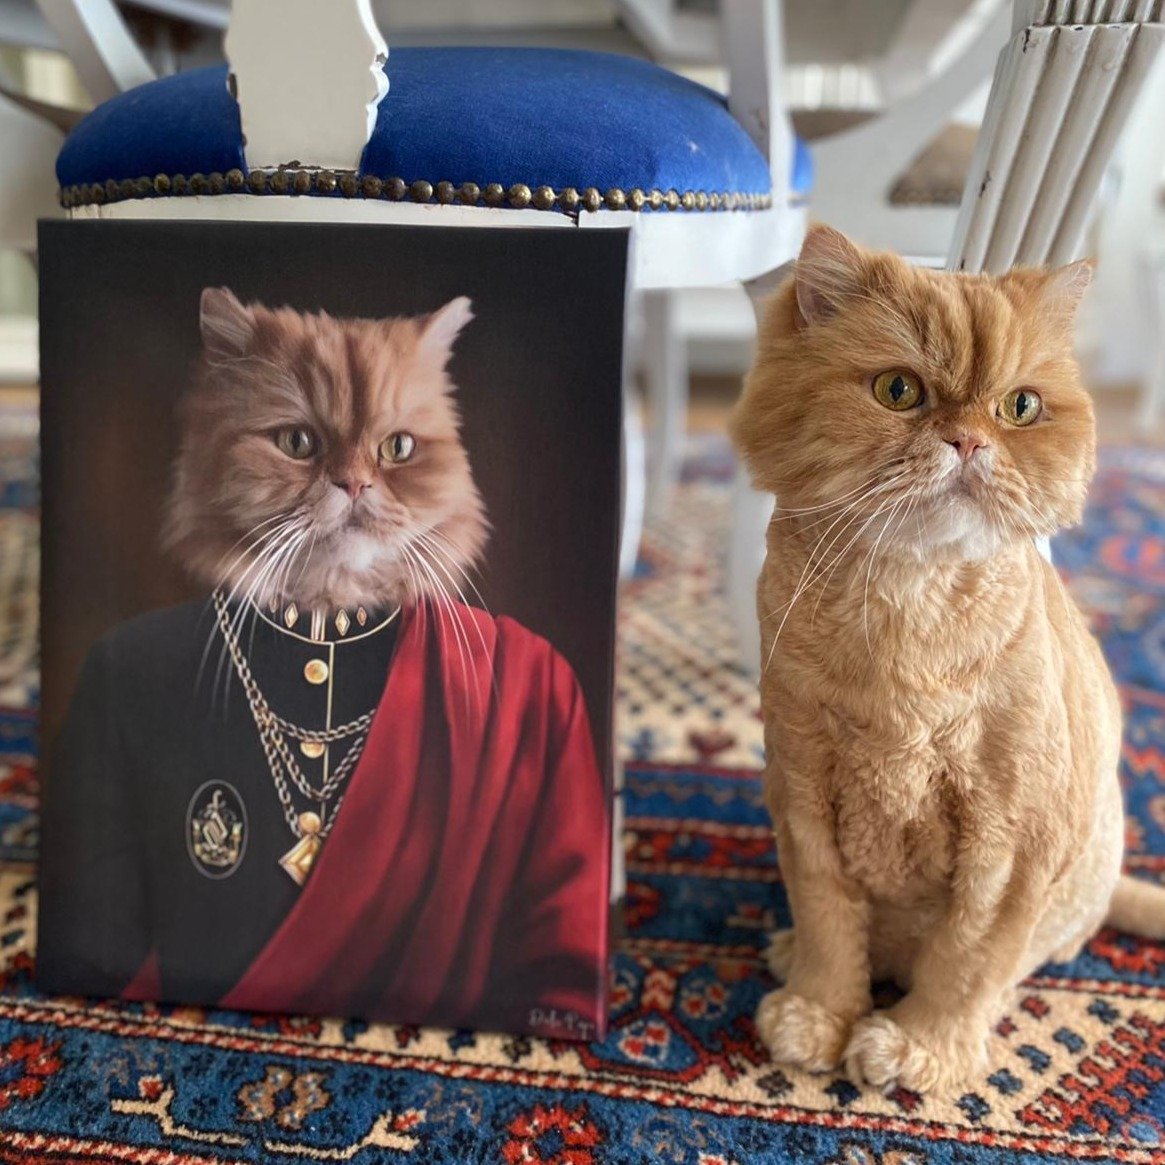 Kişiye özel şövalye kedi tablosu yaptırmak için hemen tıkla. Fotoğrafını yükle, tasarımı seç, tablon adresine gelsin.